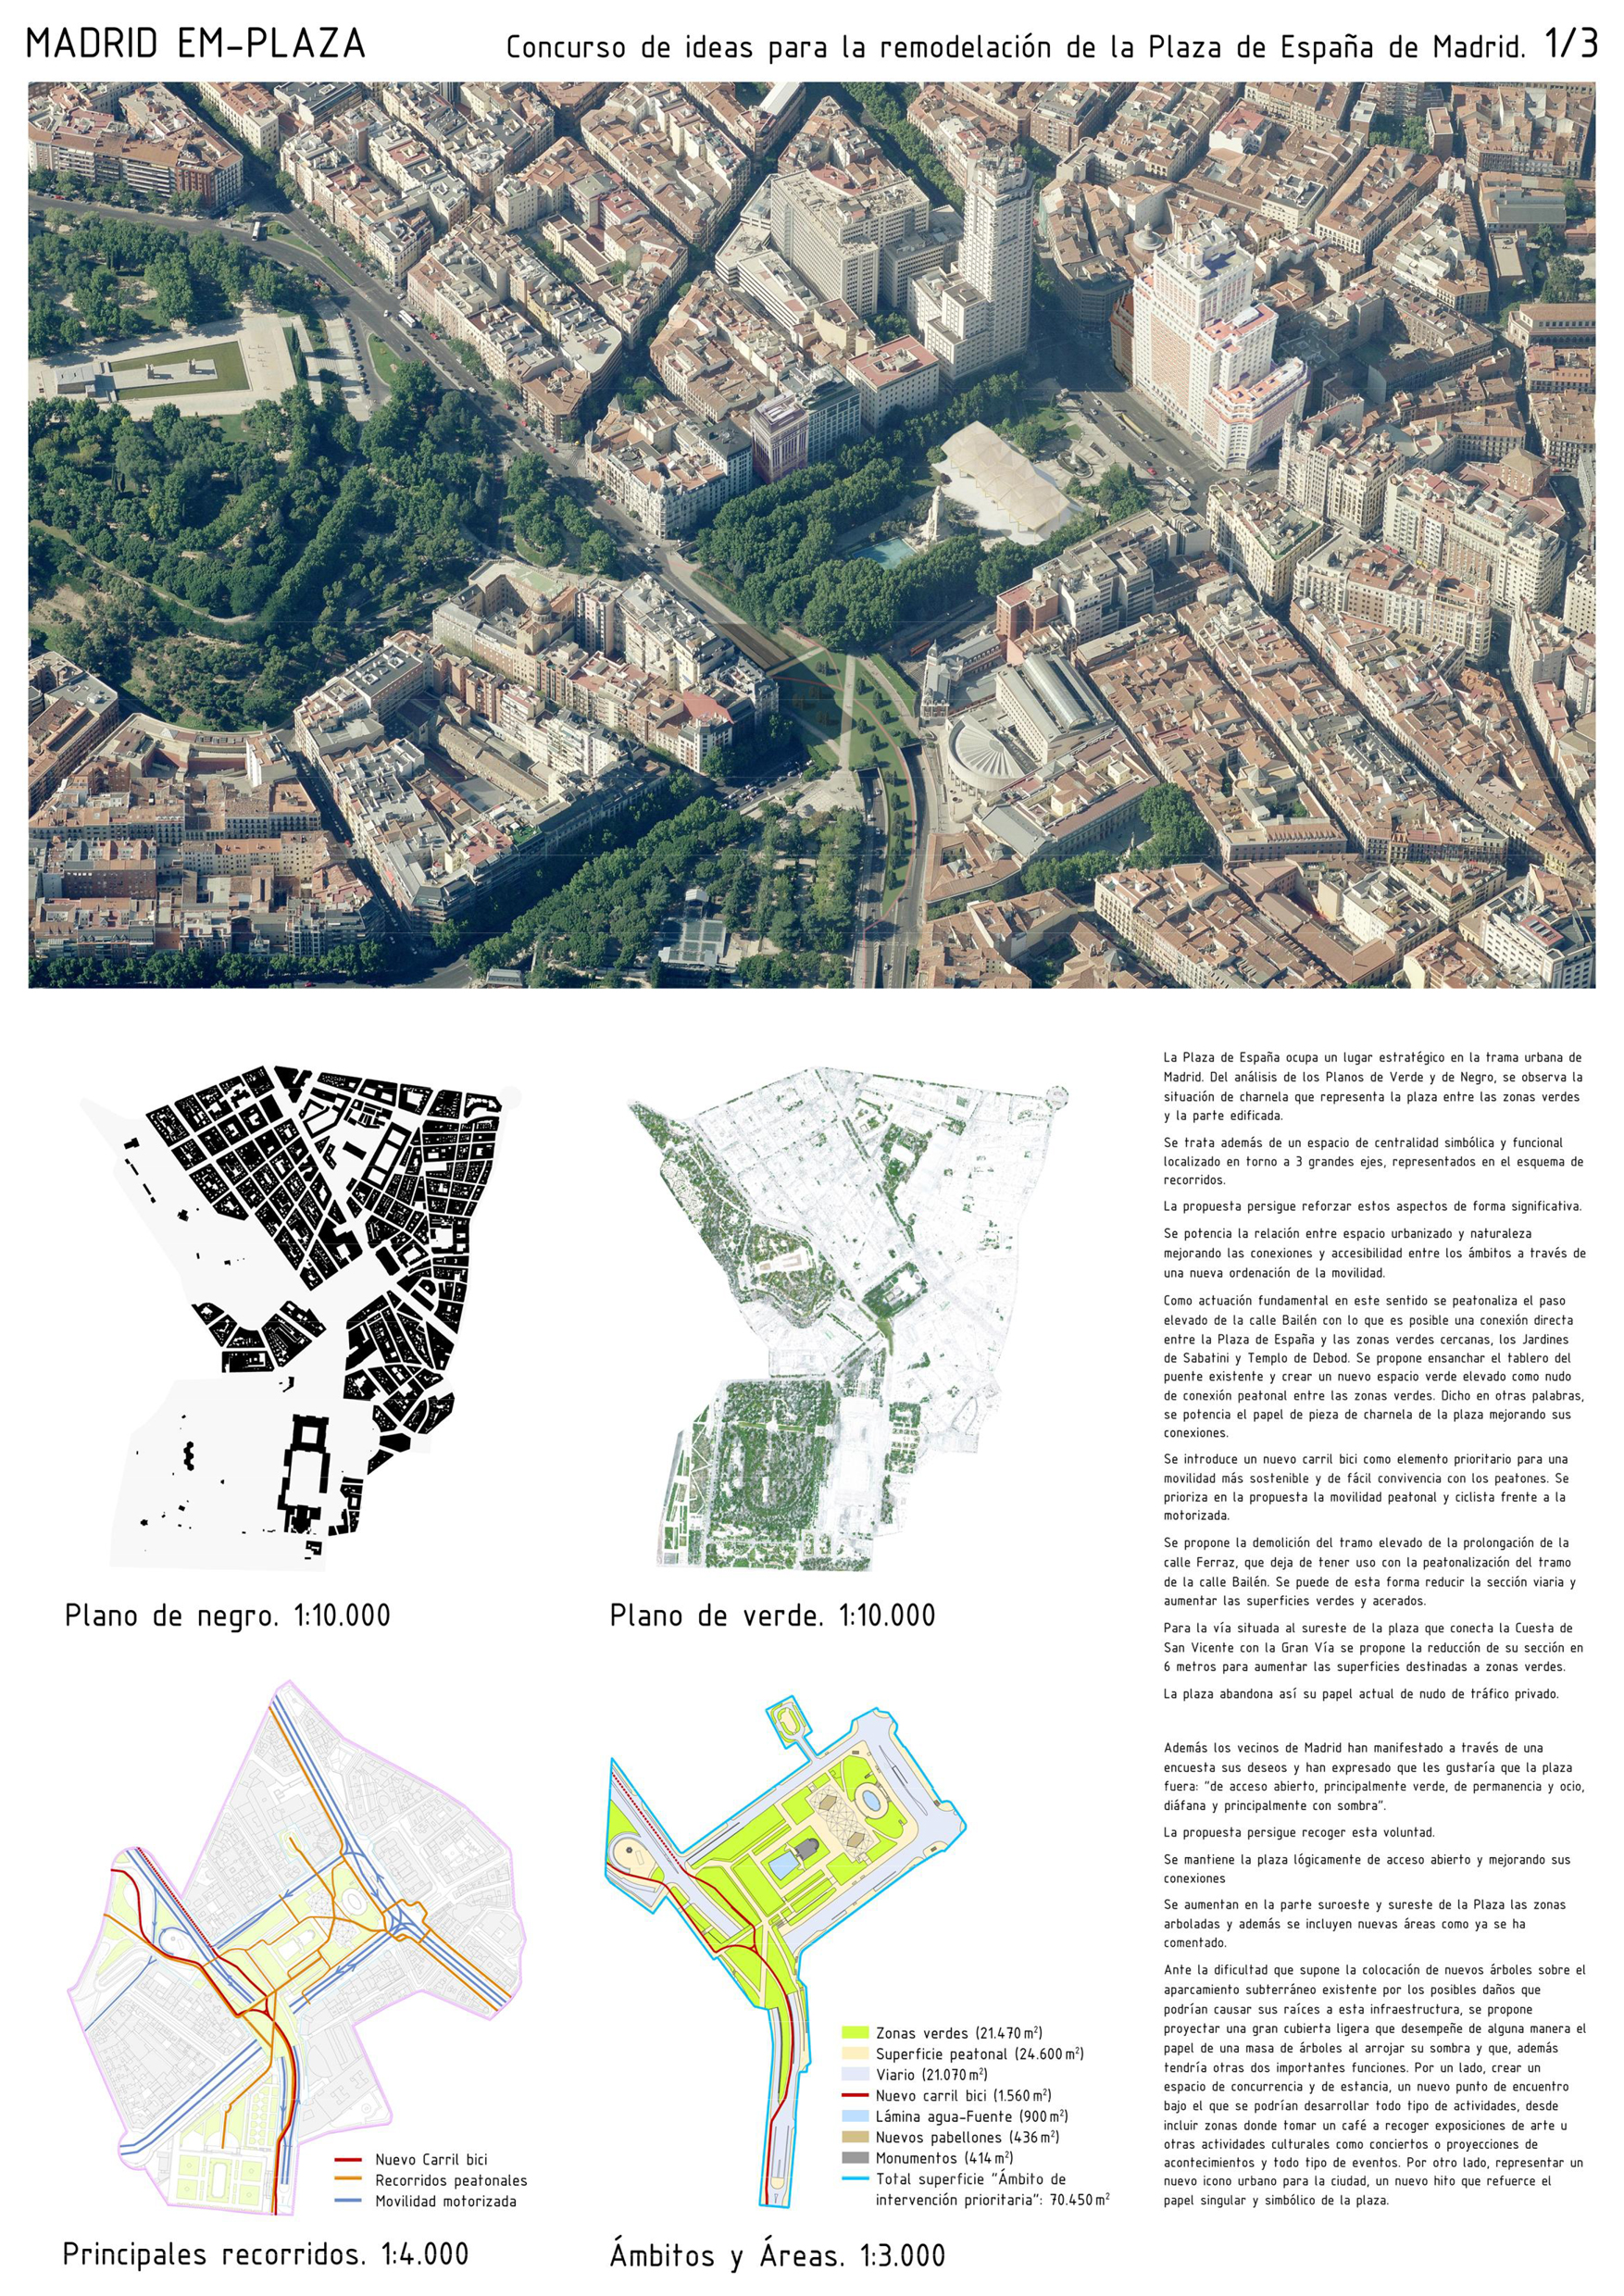 Proyecto 48 para la Remodelación de Plaza España: MADRID EM-PLAZA